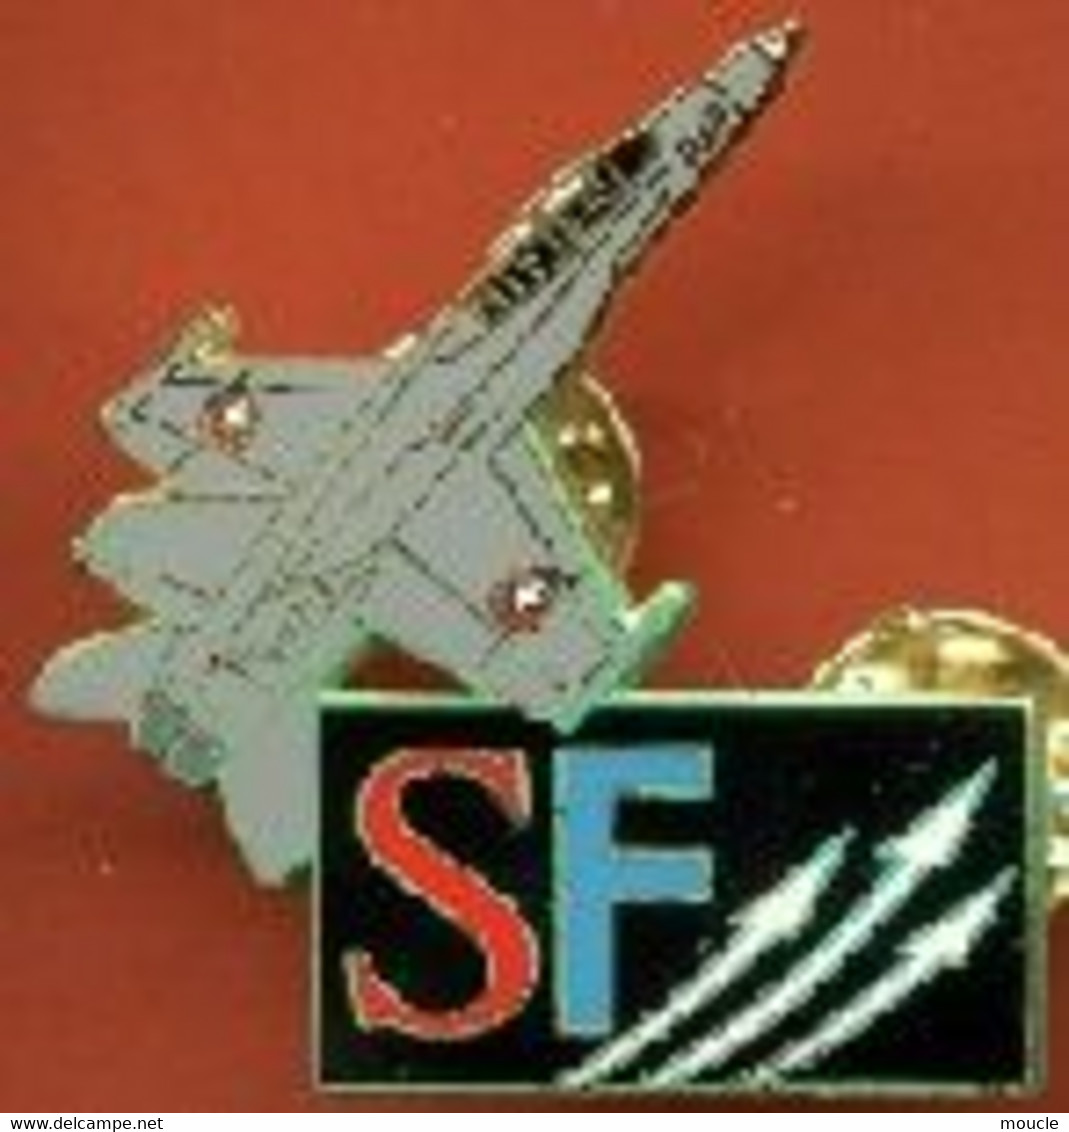 PATROUILLE SUISSE - PLANE - FLUGZEUG - AEREO - SWISS AIR FORCE TEAM - PATROL - SCHWEIZ - SVIZZERA - RADIO SF -     (31) - Airplanes